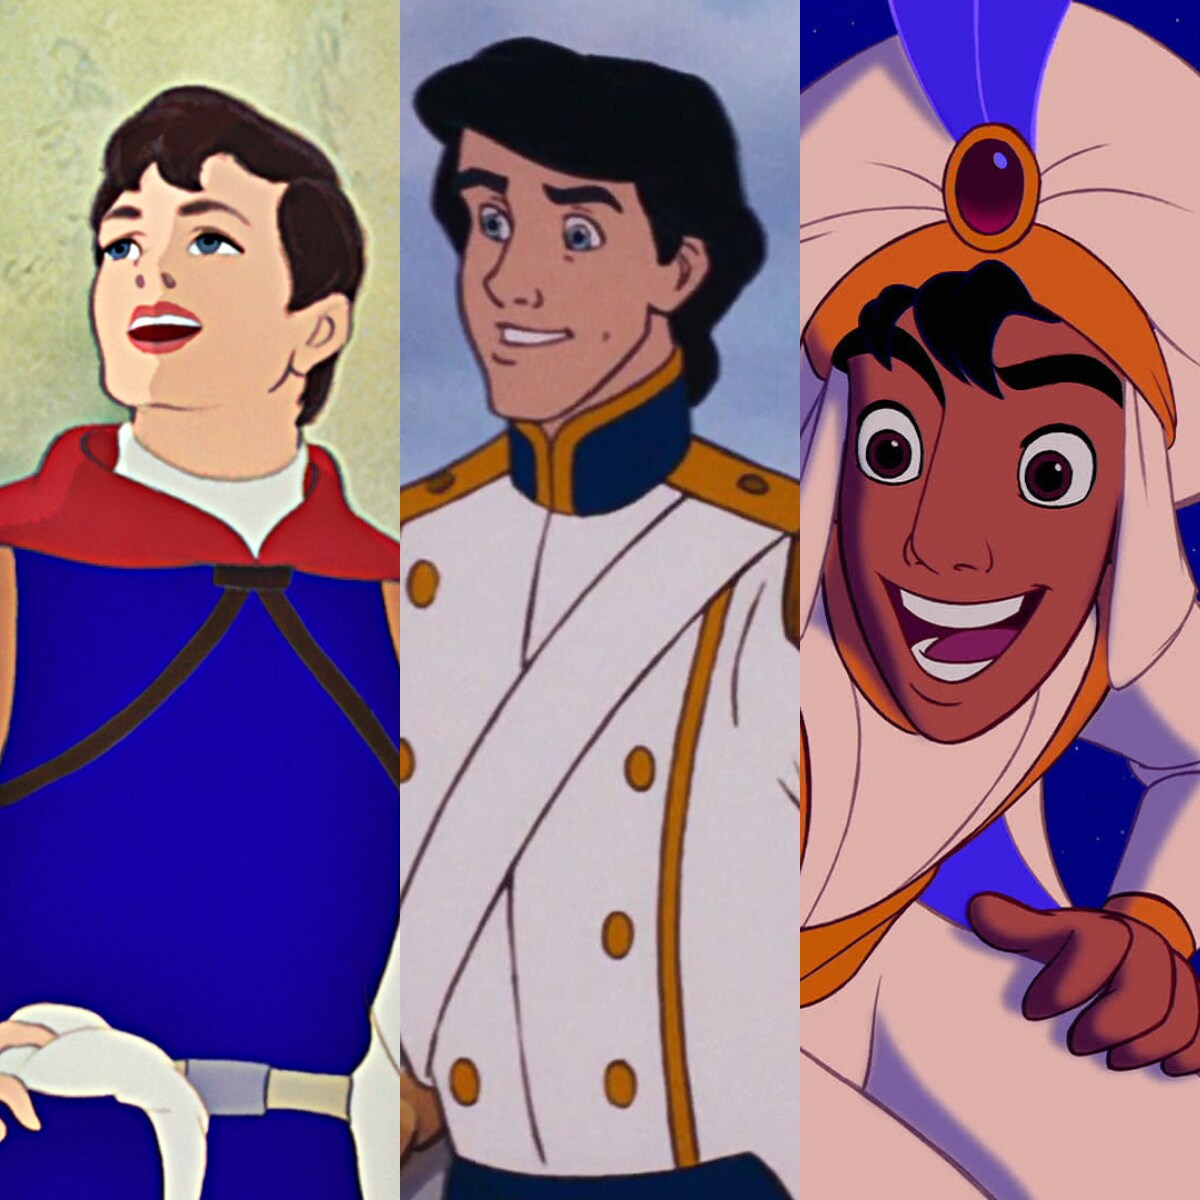 Quiénes son los príncipes de Disney | Disney Latino